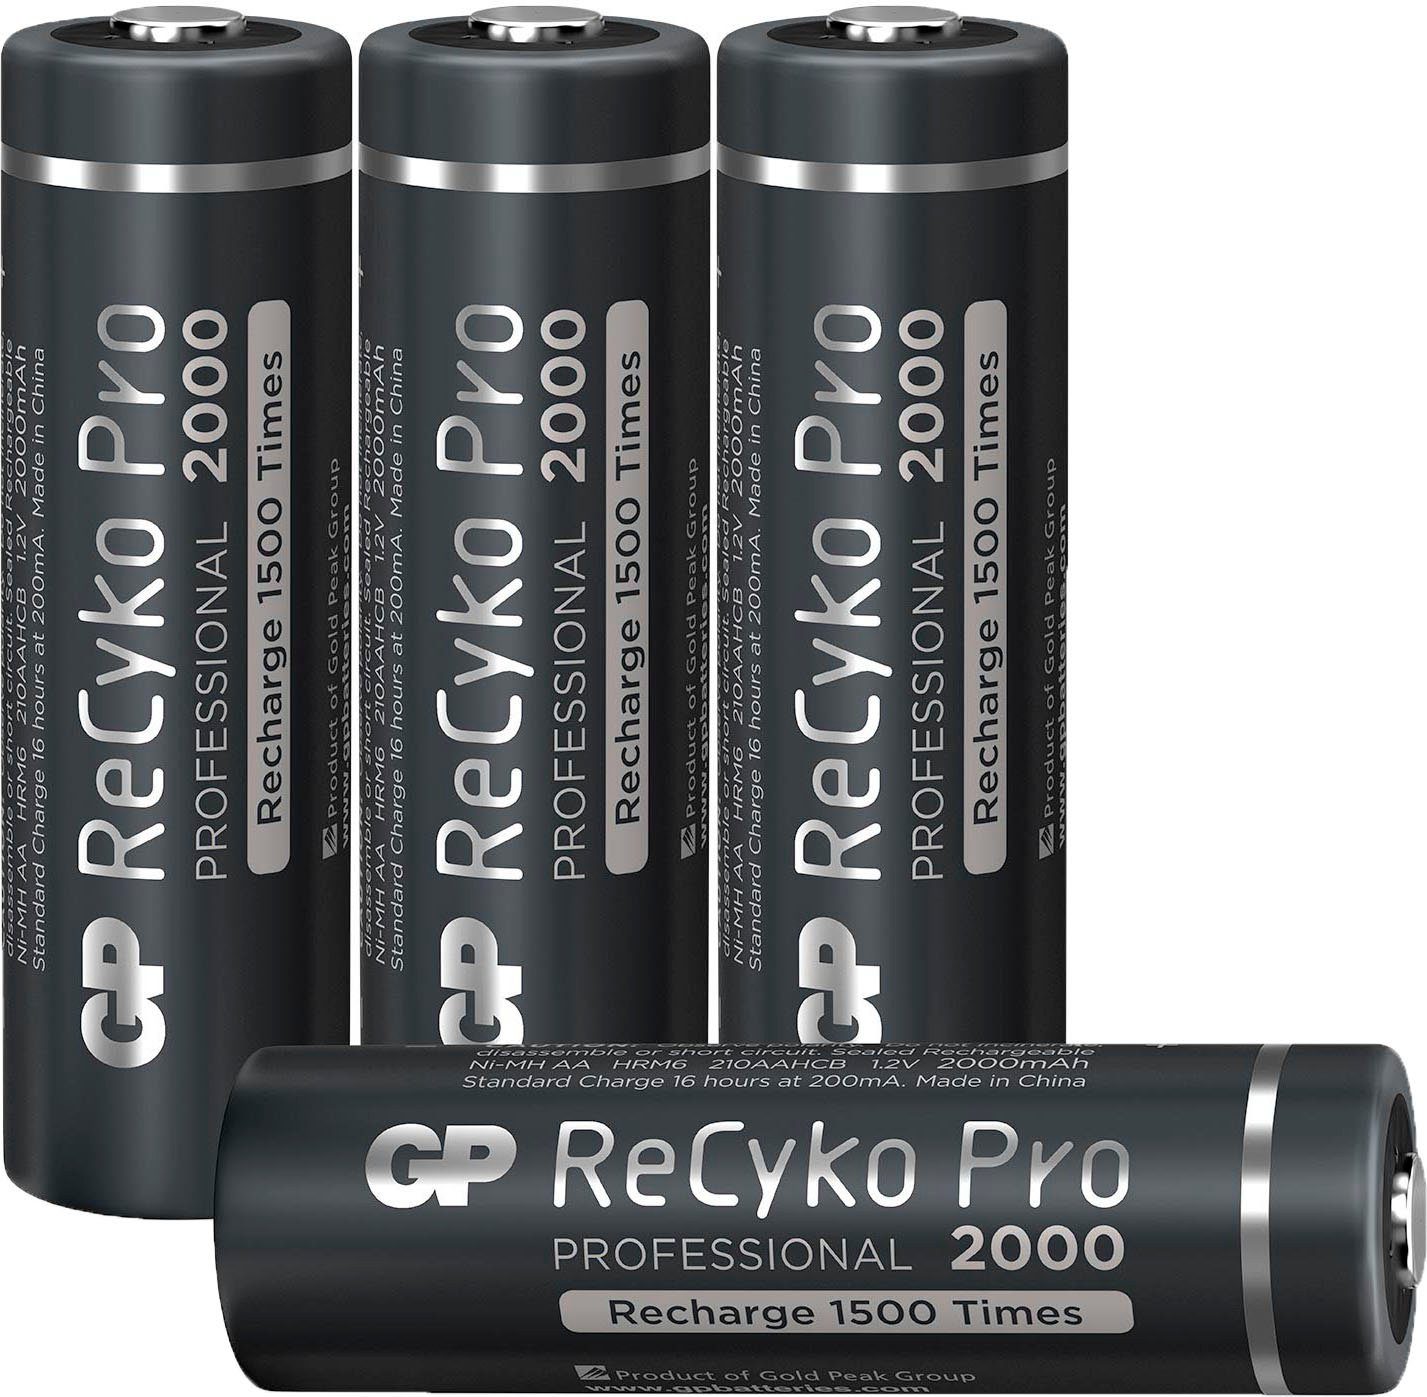 2000 (1,2 1,2V AA NiMH Batterie, Pack St) ReCyko V, 4 mAh Batteries 4er Pro GP